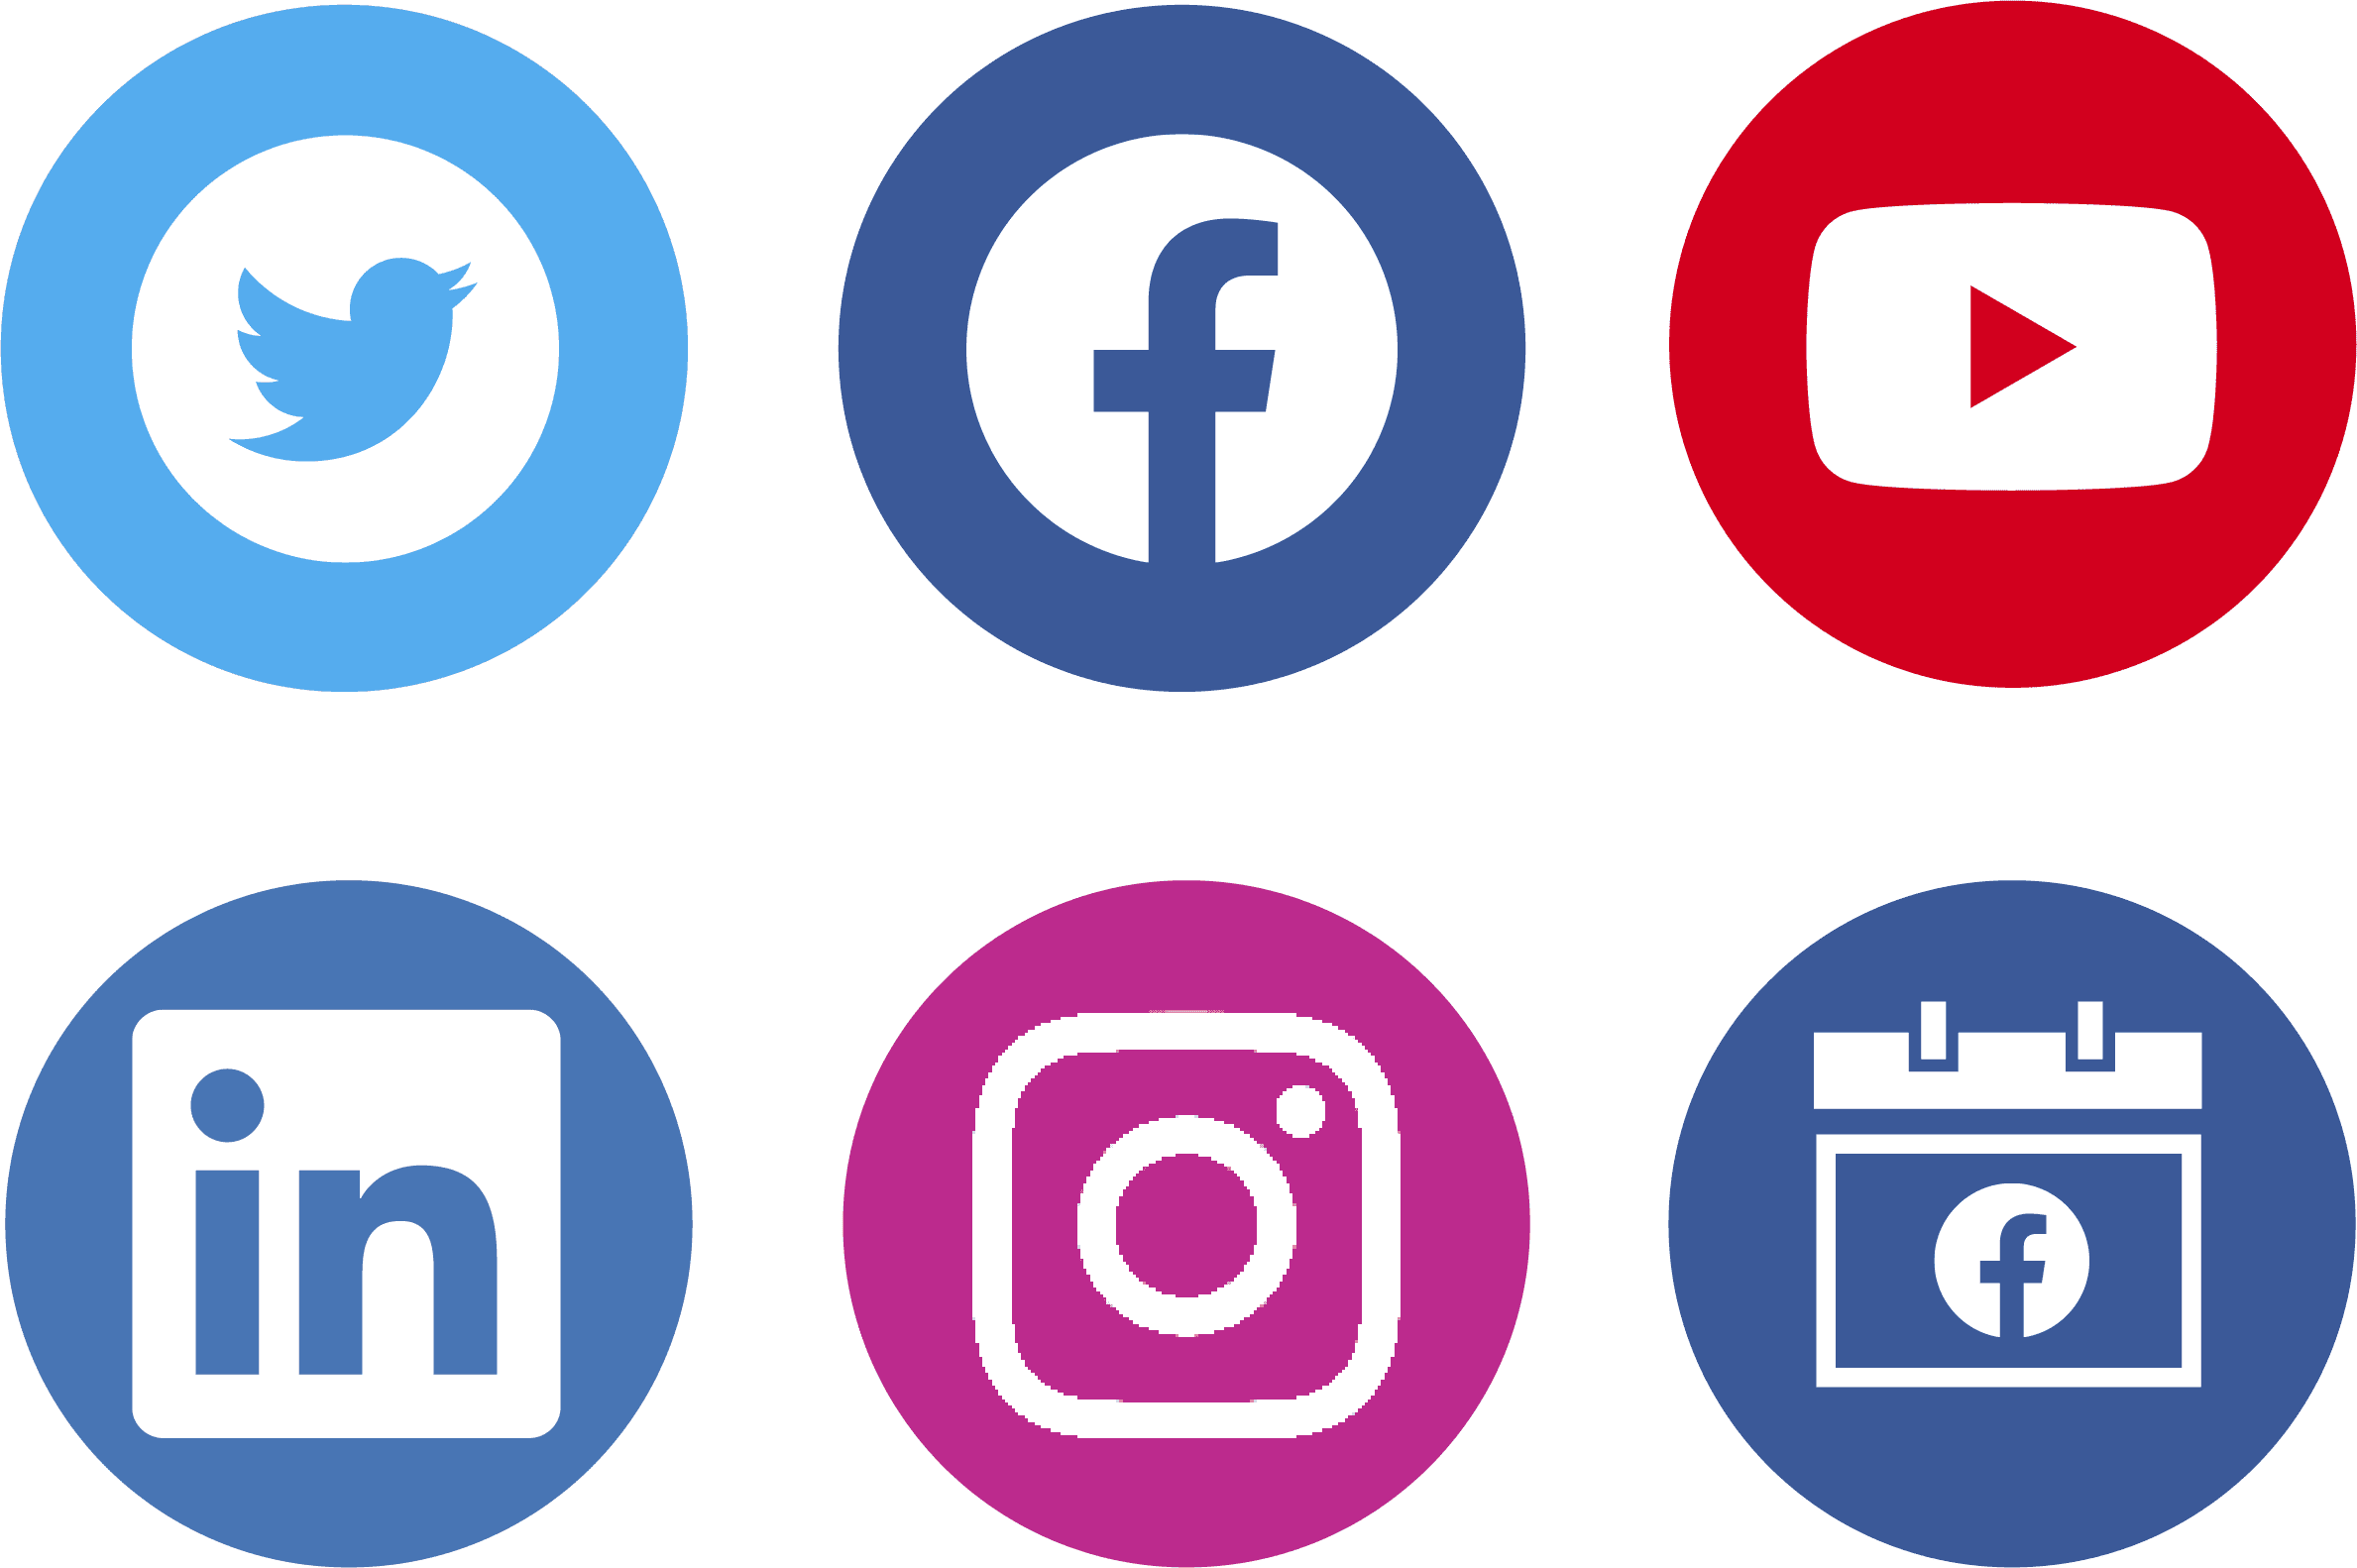 Social platform Logos